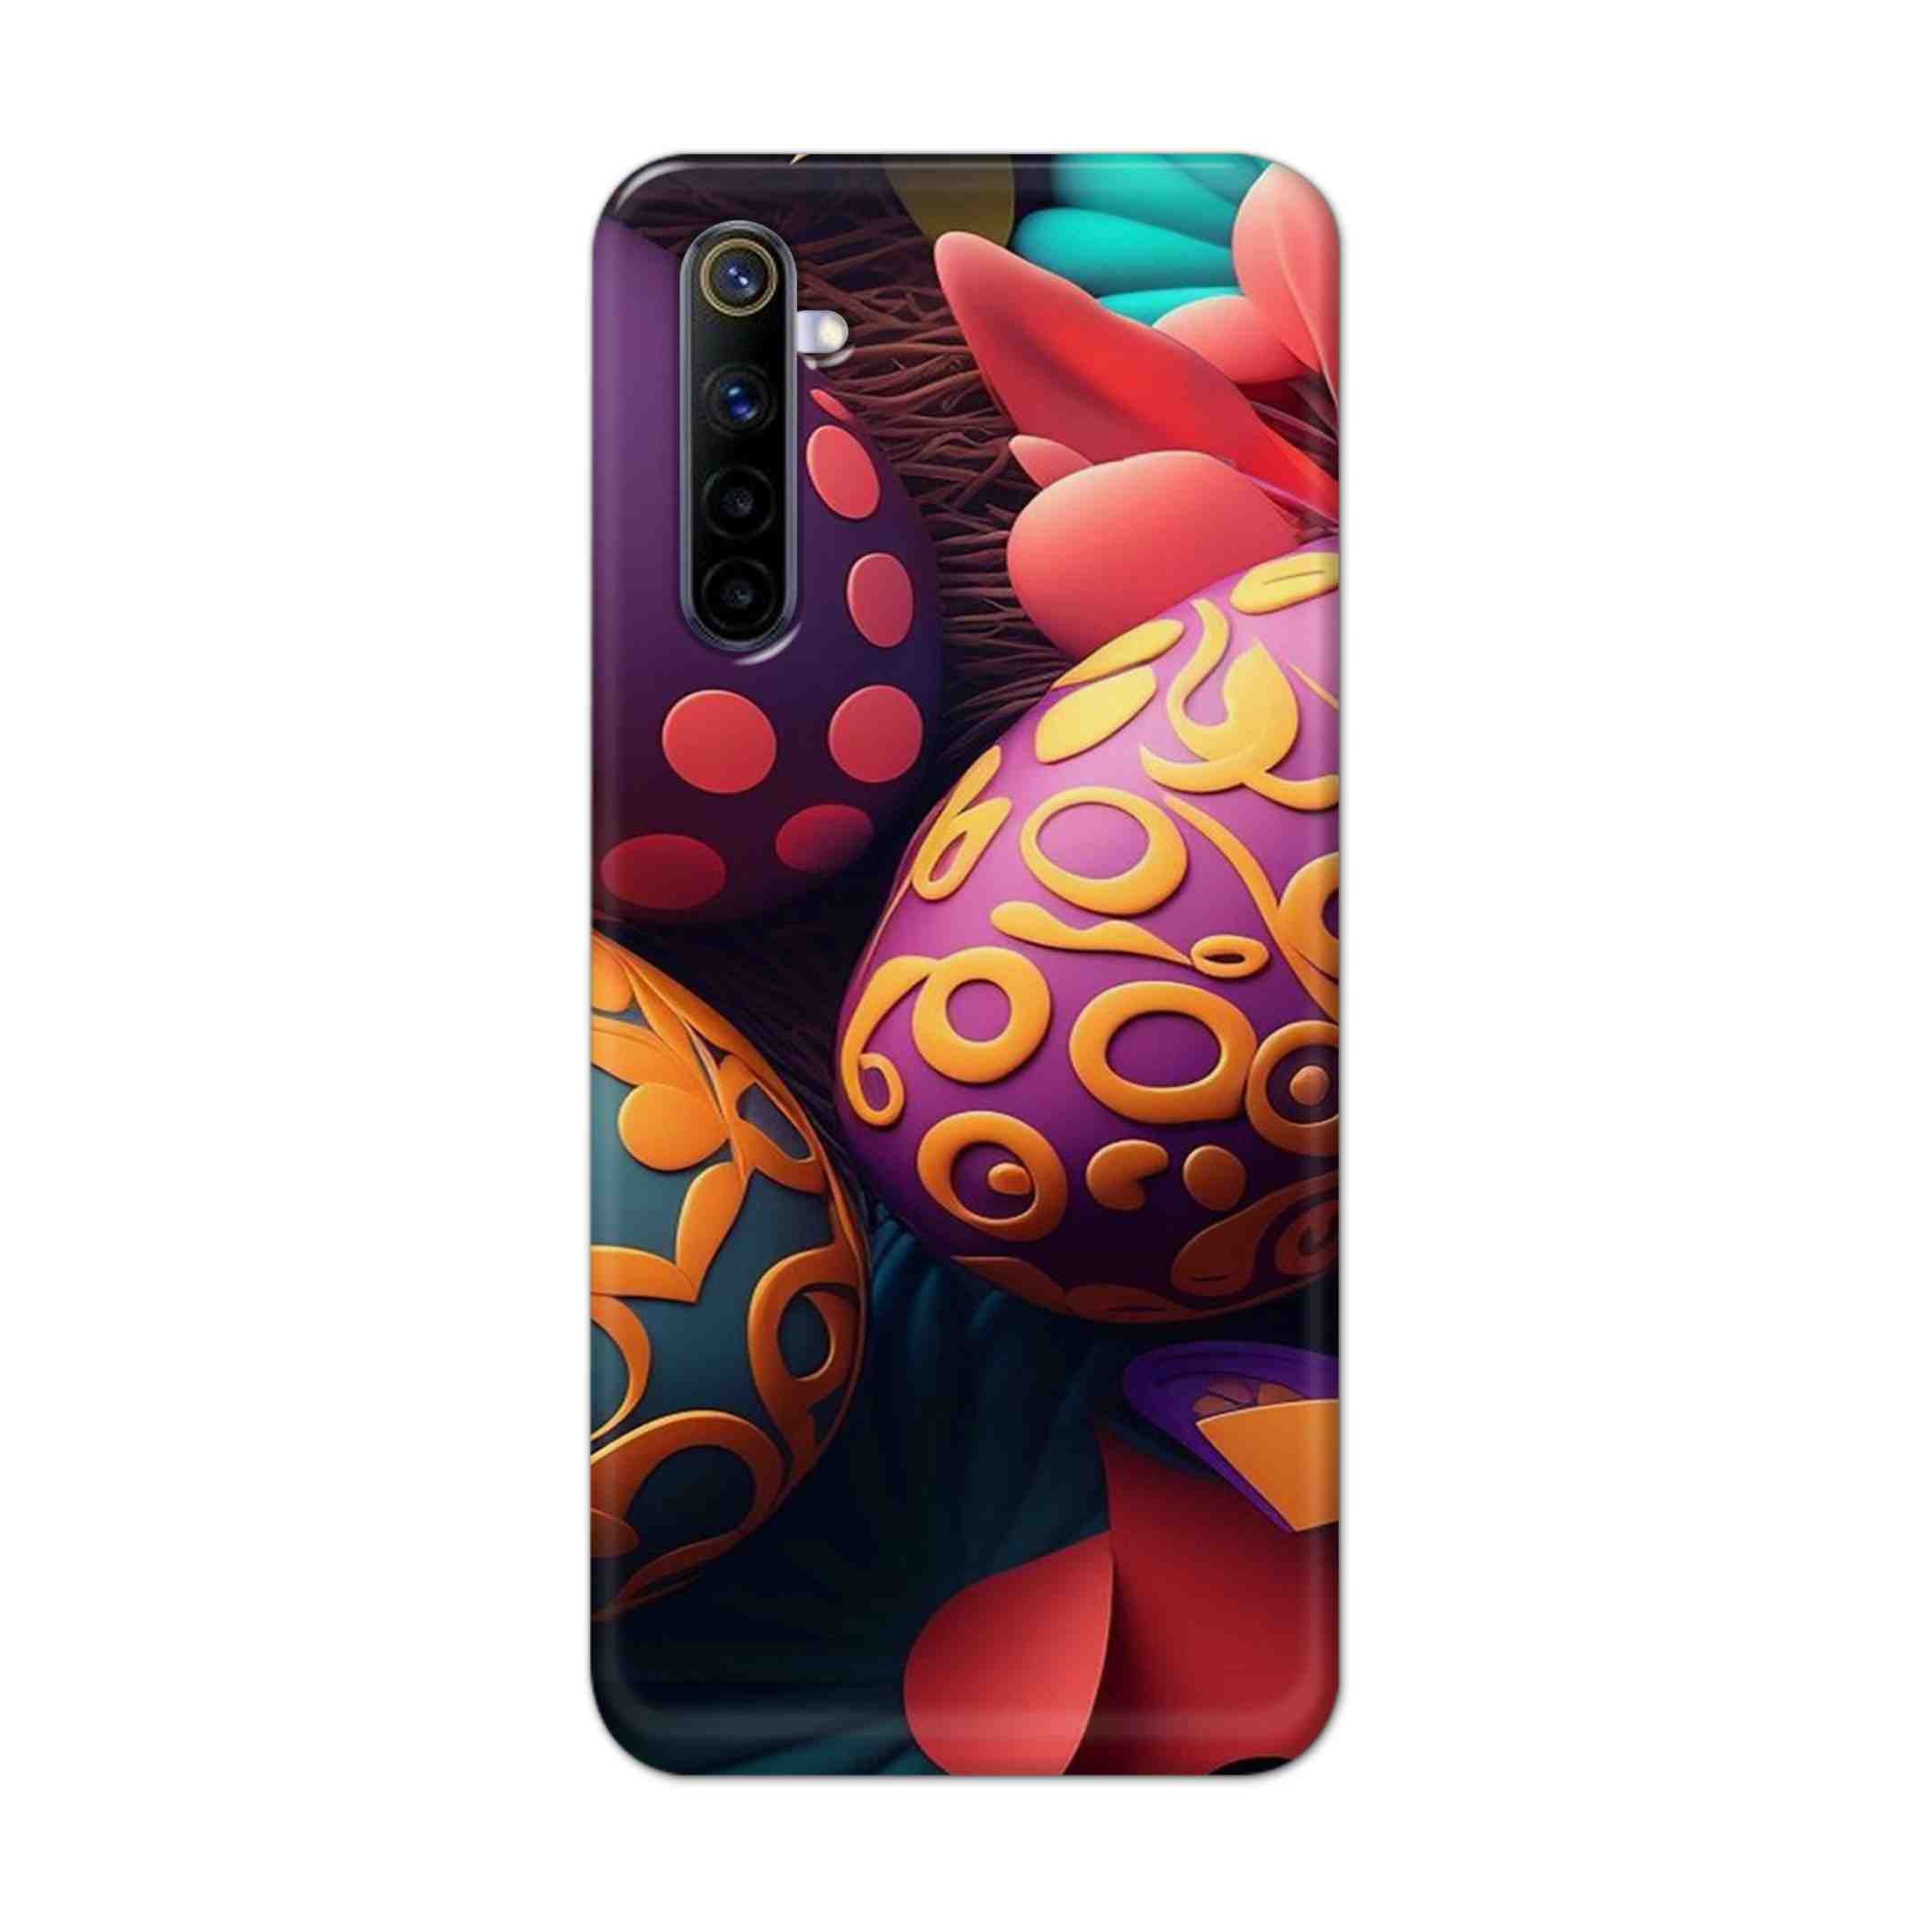 Buy Easter Egg Hard Back Mobile Phone Case Cover For REALME 6 PRO Online